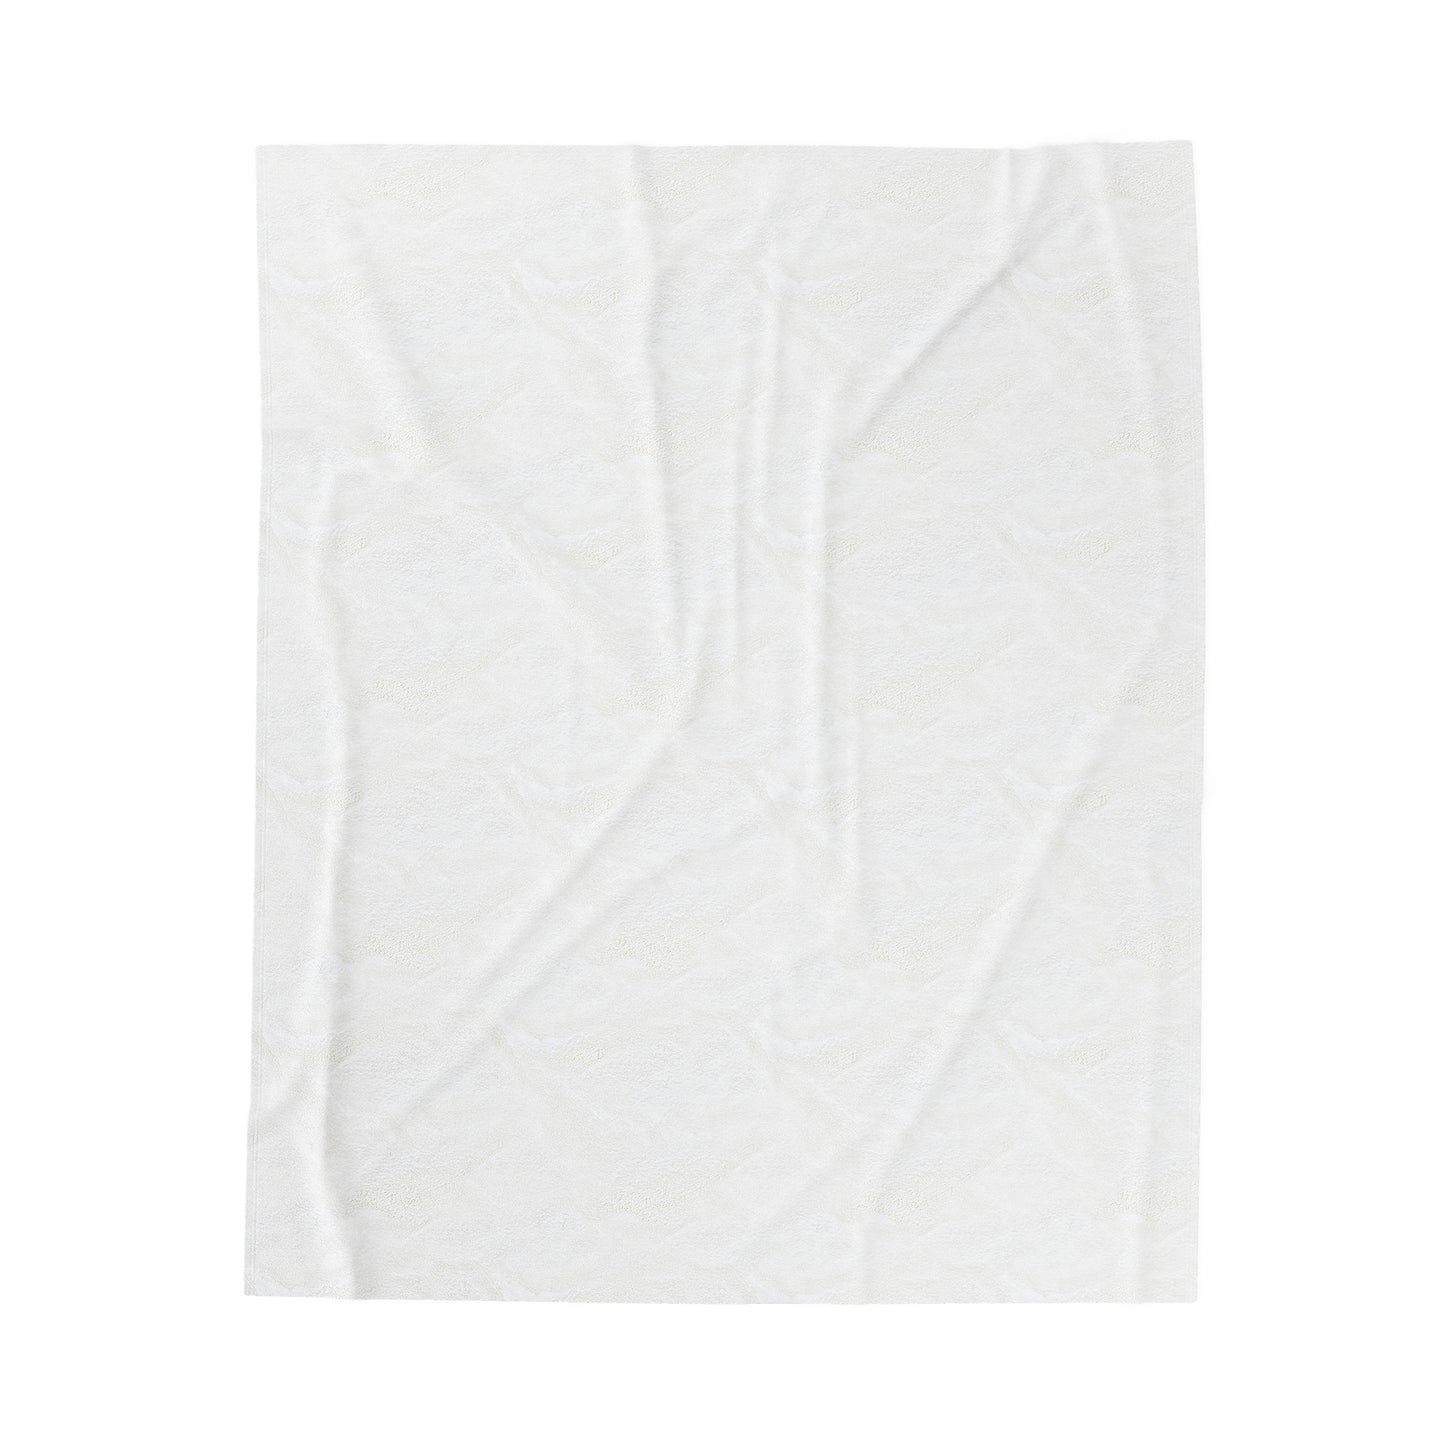 Luxlife Brands White Velveteen Plush Blanket Printify